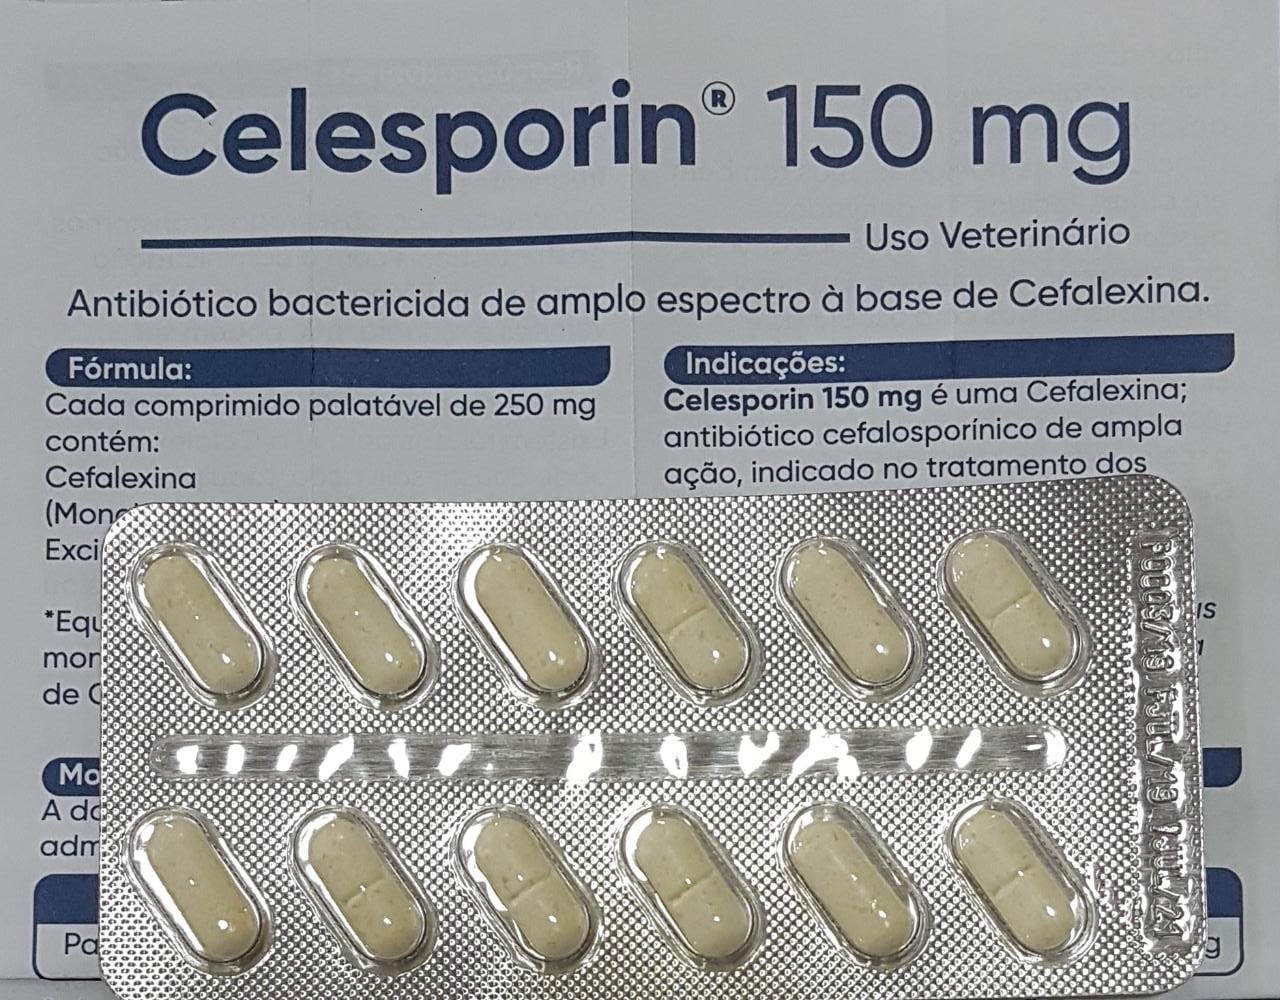 Celesporin 150 mg Ourofino - Blíster com 12 comprimidos (VENCIMENTO OUT/21)